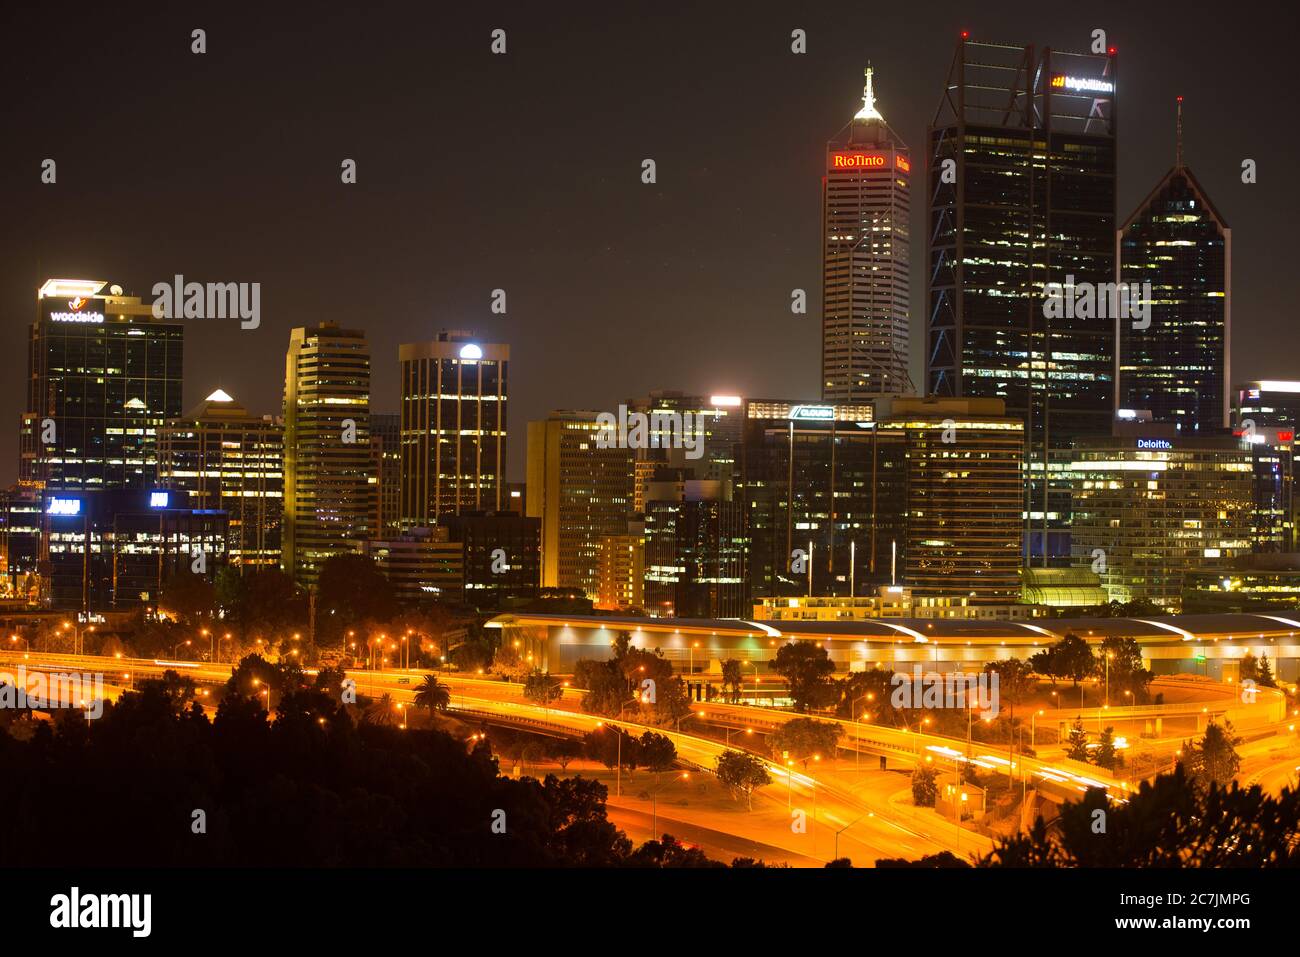 Perth, Australien; 8. April 2017: Luftaufnahme der Skyline von Perth bei Nacht, Hauptstadt von Western Australia, regionale Zentrale für Bergbau und Finanzen Stockfoto